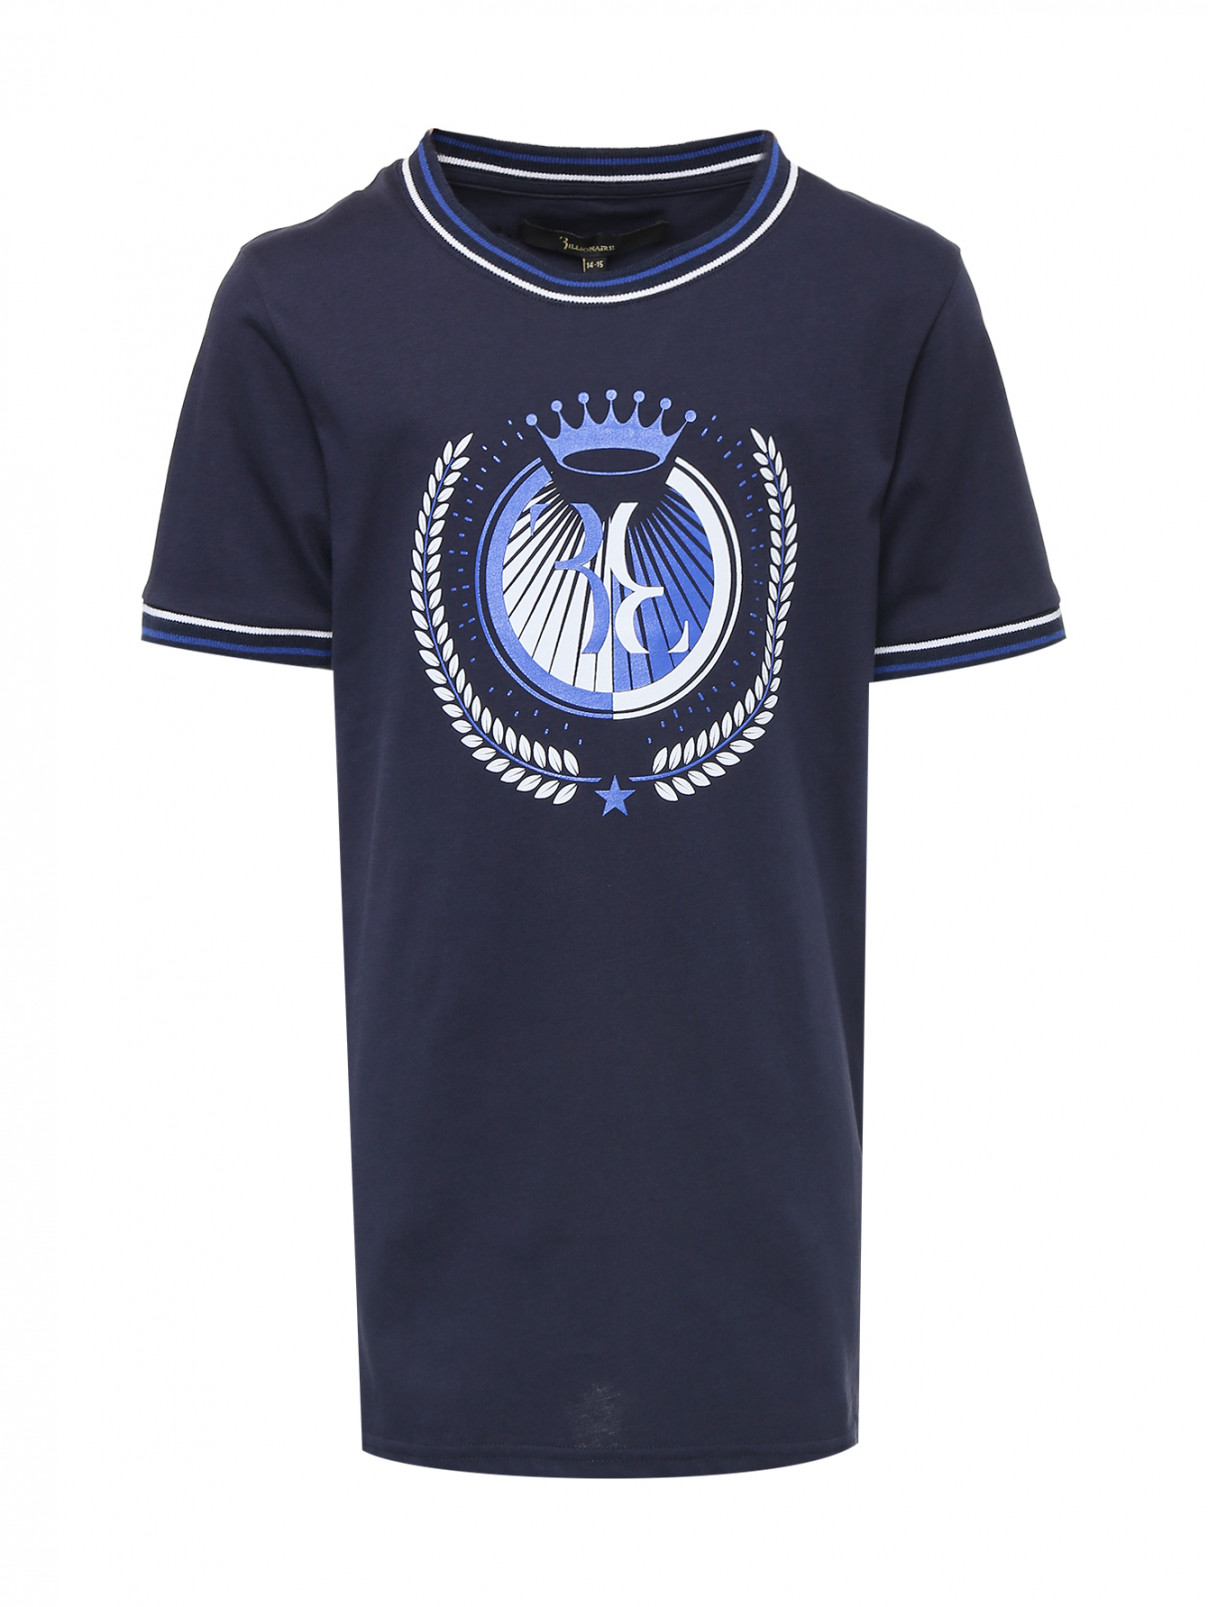 Хлопковая футболка с принтом Billionaire  –  Общий вид  – Цвет:  Синий